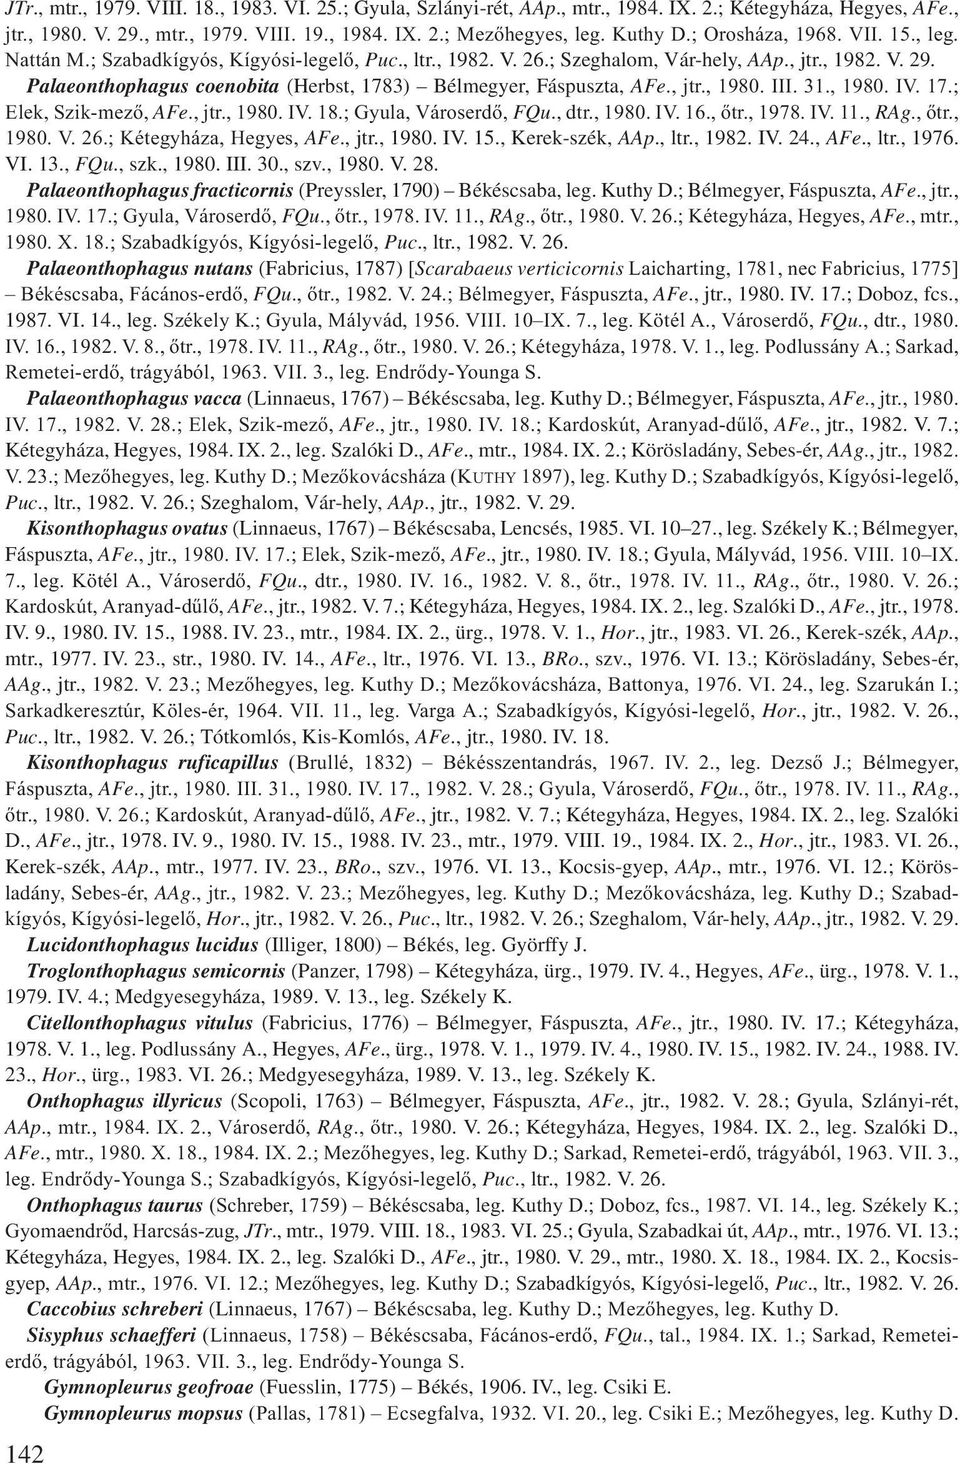 Palaeonthophagus coenobita (Herbst, 1783) Bélmegyer, Fáspuszta, AFe., jtr., 1980. III. 31., 1980. IV. 17.; Elek, Szik-mező, AFe., jtr., 1980. IV. 18.; Gyula, Városerdő, FQu., dtr., 1980. IV. 16., őtr.